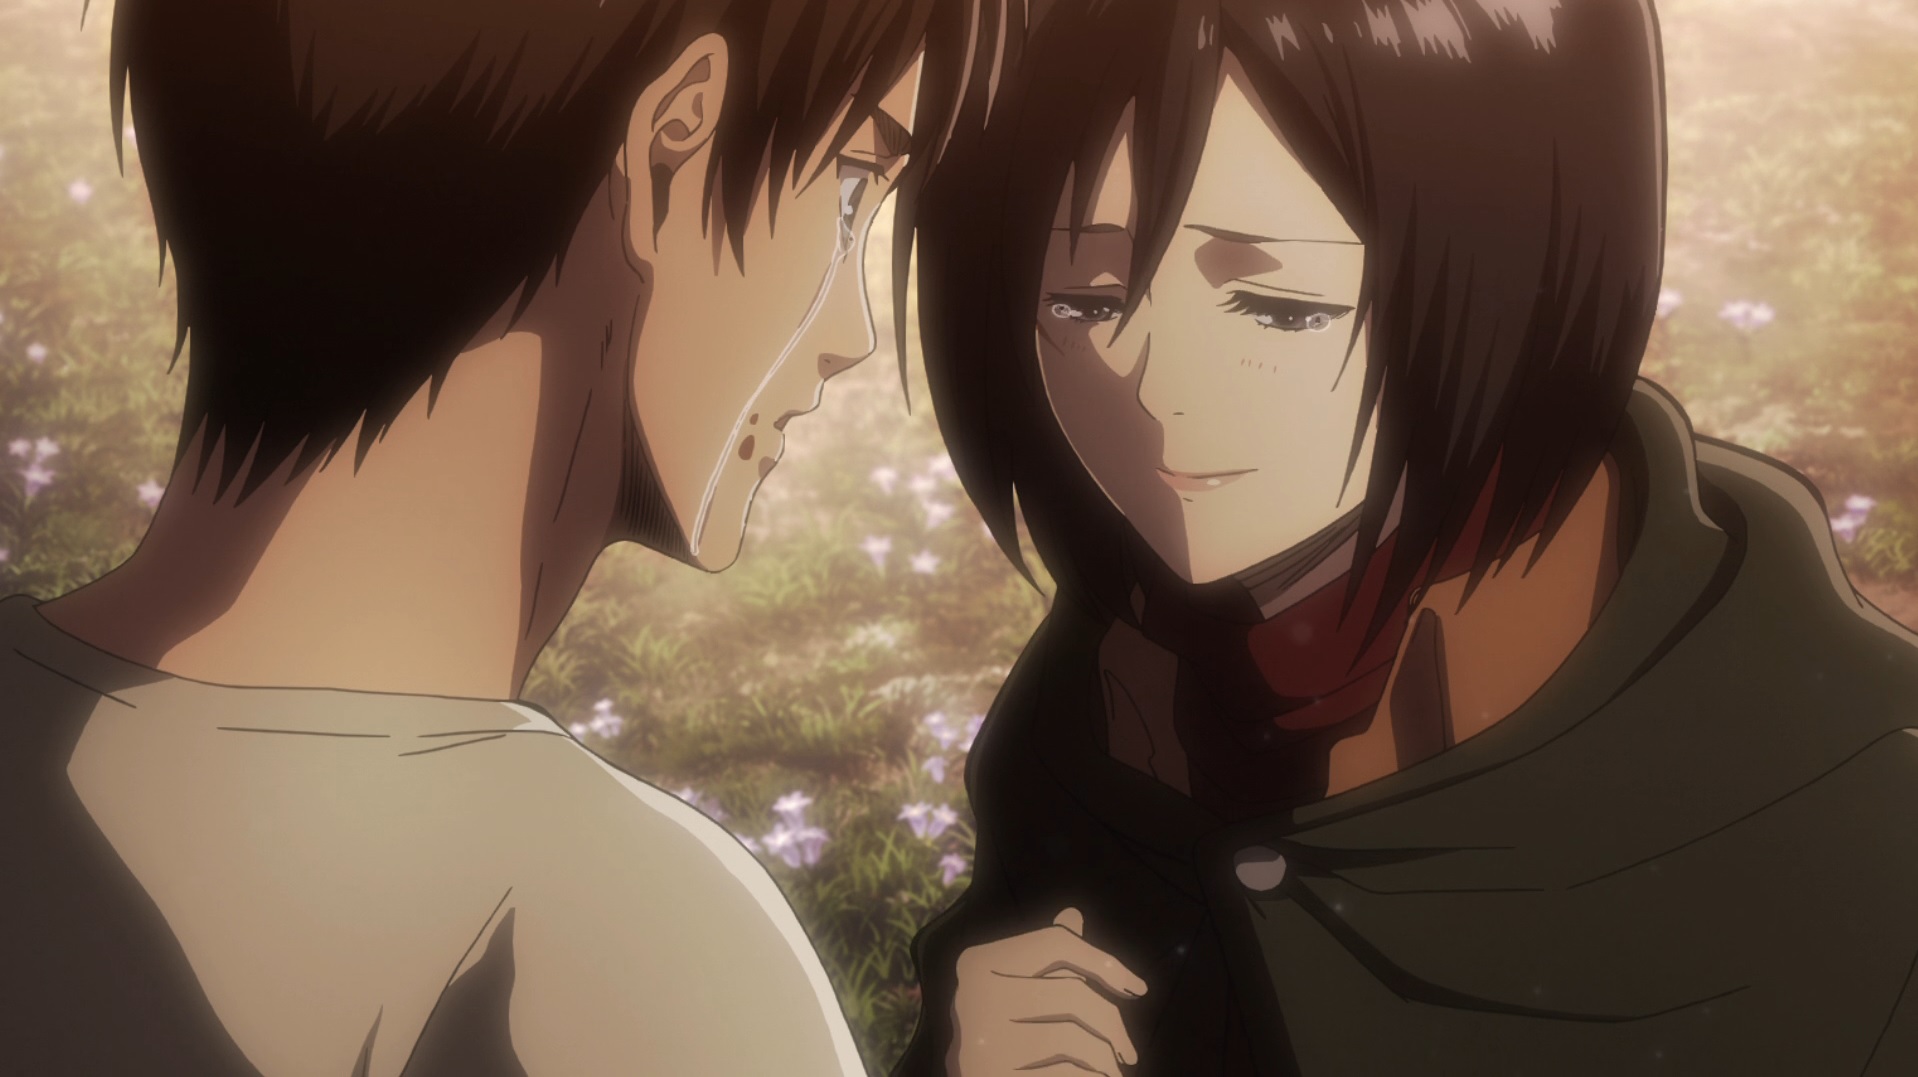 ¿Eren y Mikasa terminarán juntos? ¿O Eren se casará con Historia?